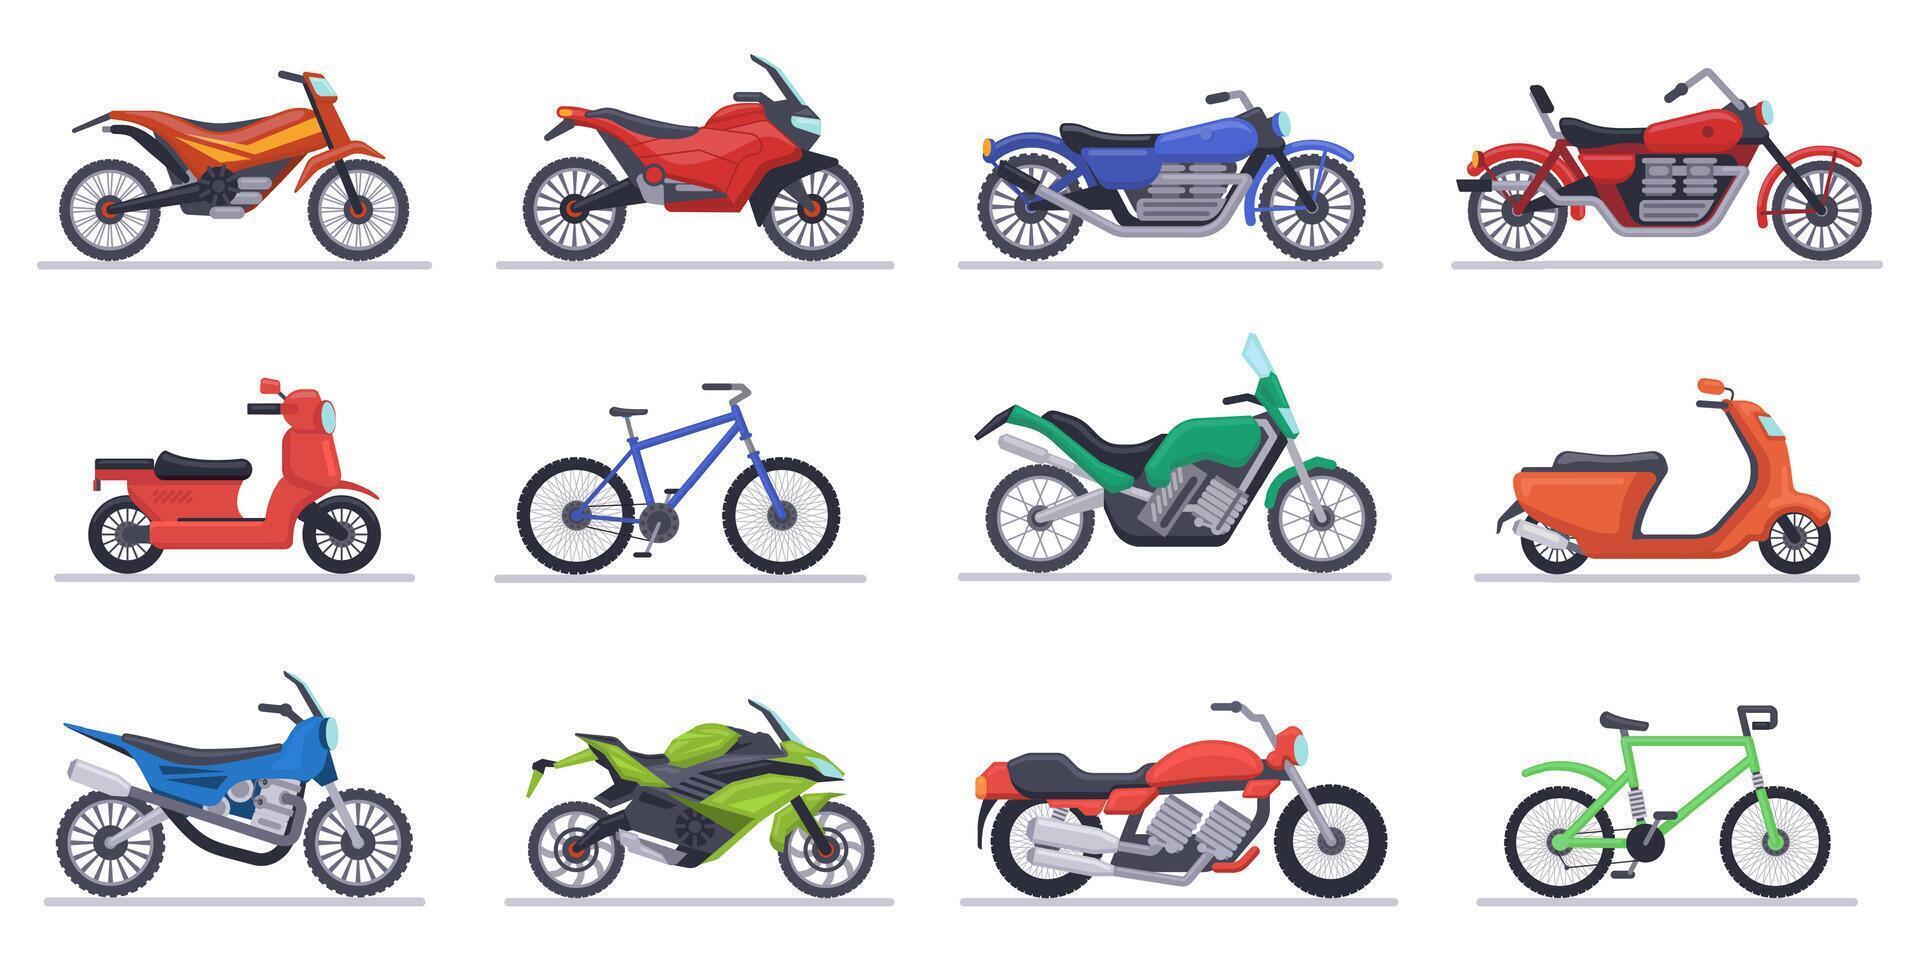 motos y scooters moto, velocidad bicicletas moderno vehículos, scooters, motocross bicicleta y helicópteros aislado vector ilustración íconos conjunto